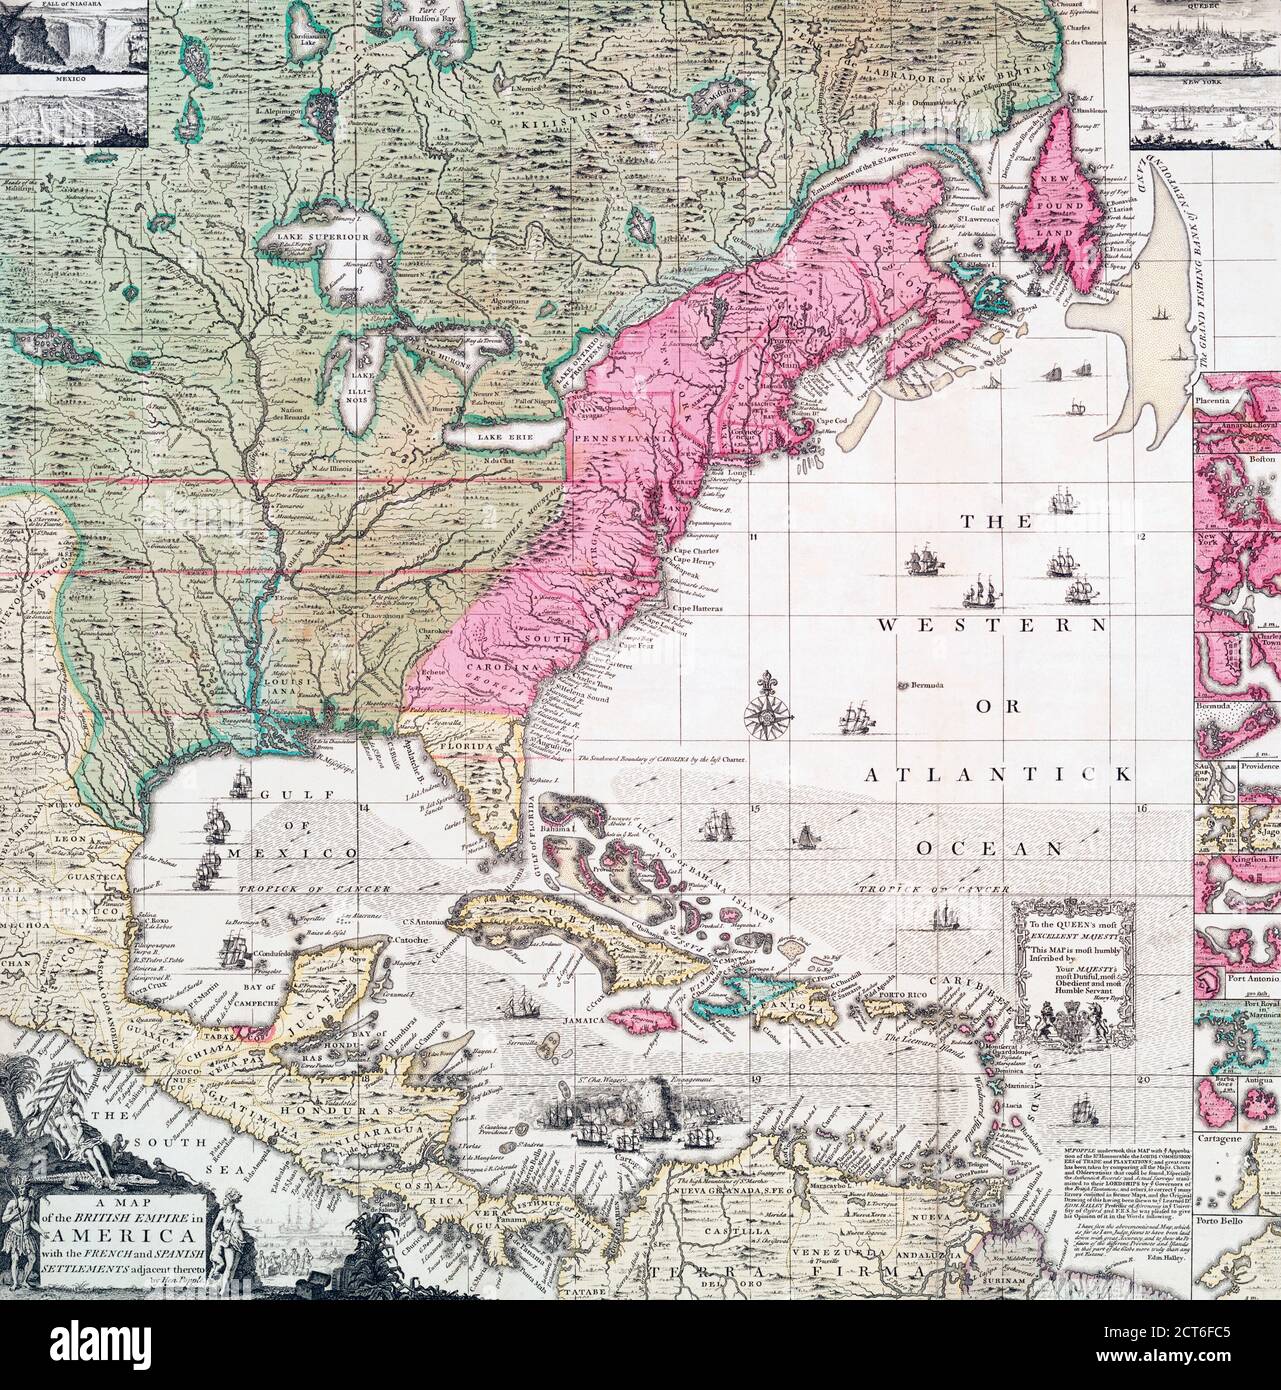 Un mapa de principios del siglo XVIII del Imperio Británico en América del Norte también muestra los asentamientos franceses, españoles y holandeses. Después de una obra del cartógrafo británico Henry Popple, ? - murió en 1743. Foto de stock